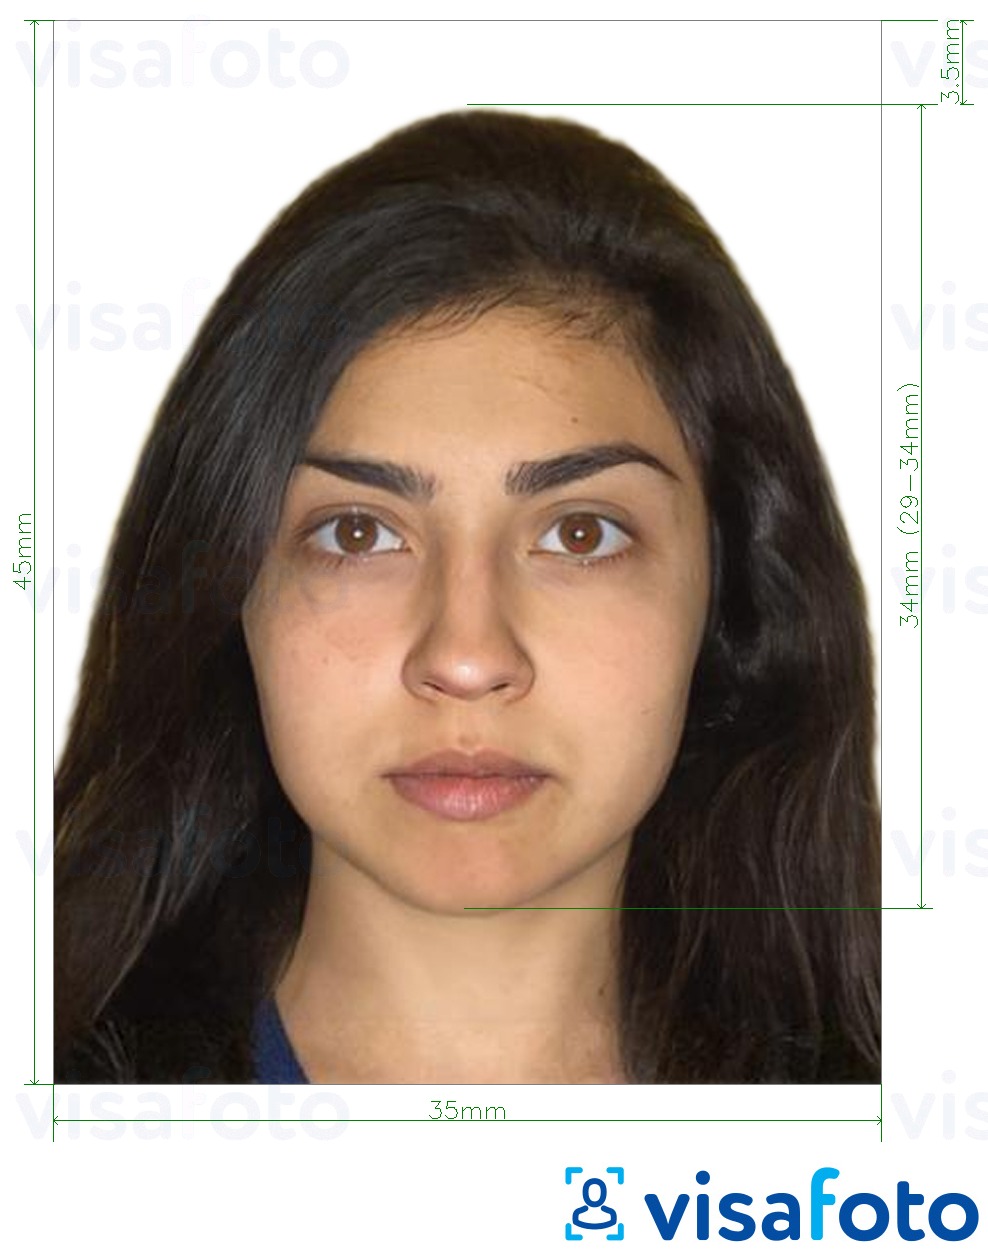 Primer fotografije za Pakistansko potrdilo o družinski registraciji (NADRA) 35 x 45 mm z natančno specifikacijo velikosti